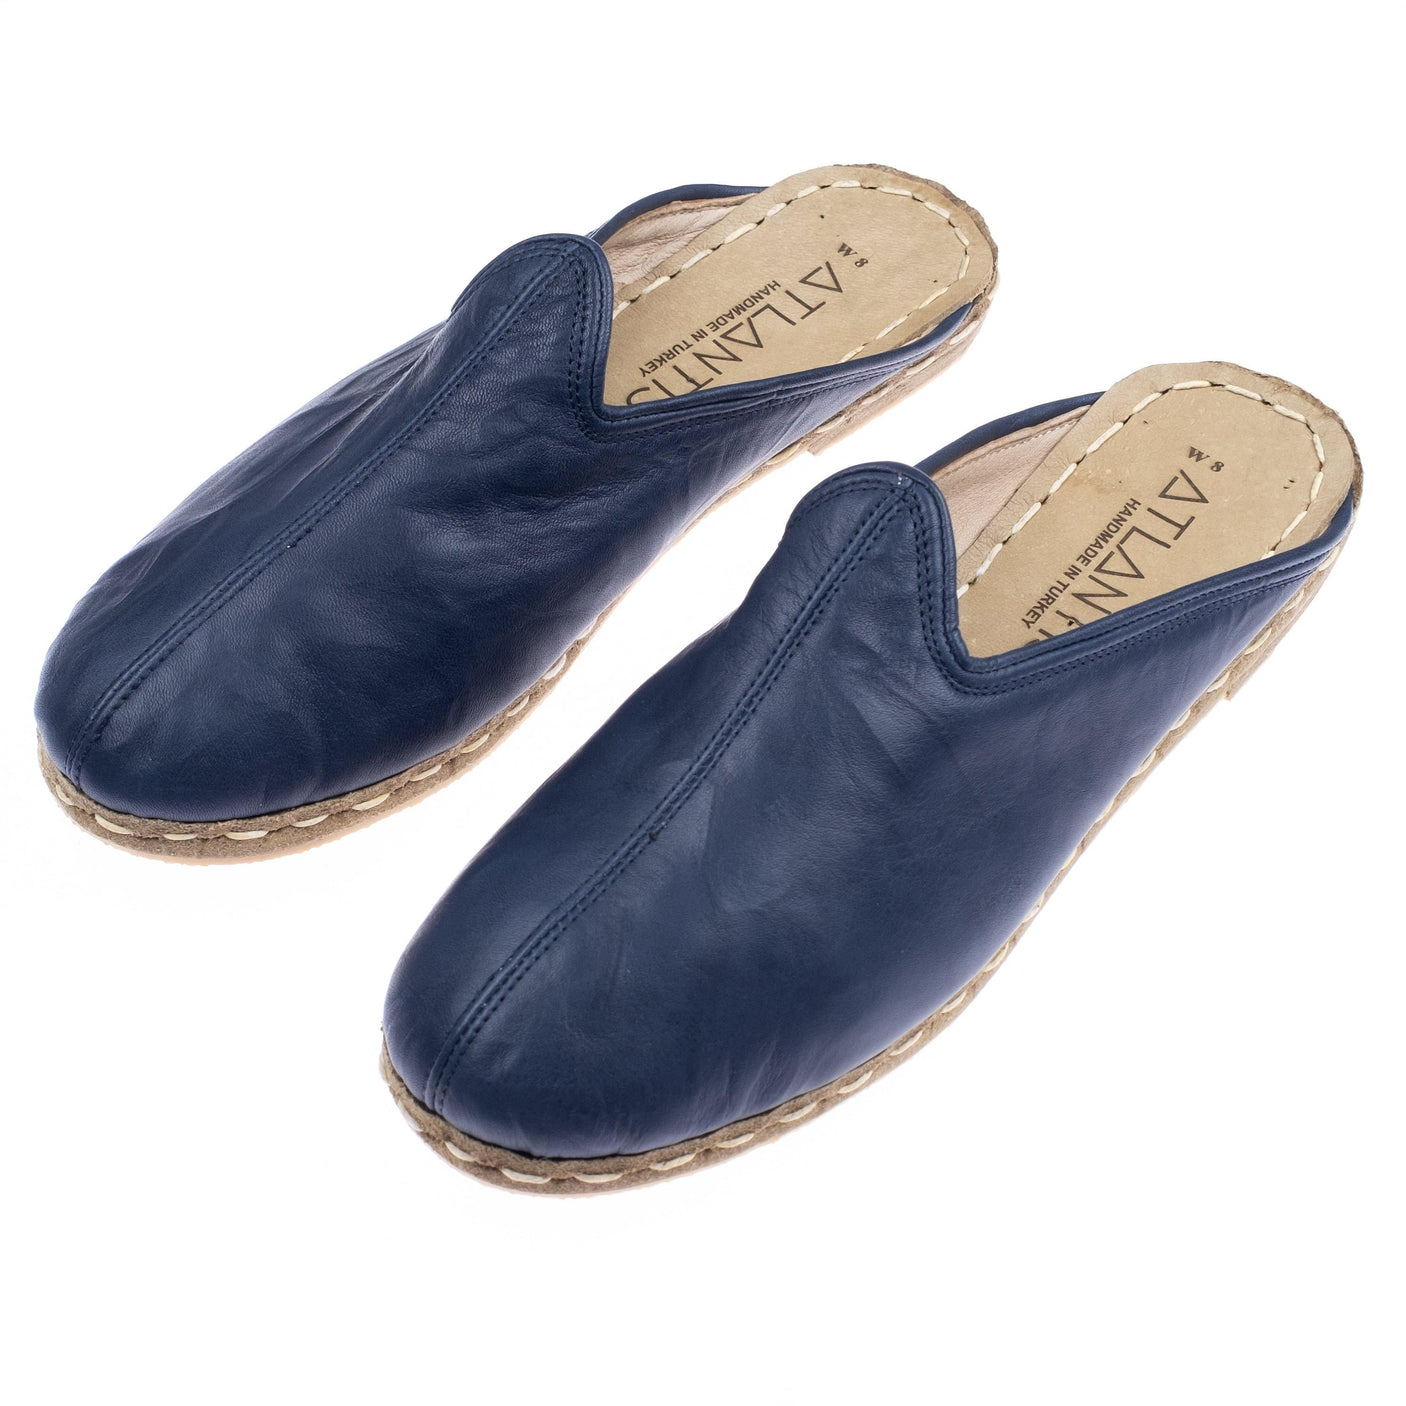 Navy Slippers - Turkish Slippers for Women & Men : Atlantis Handmade Shoes